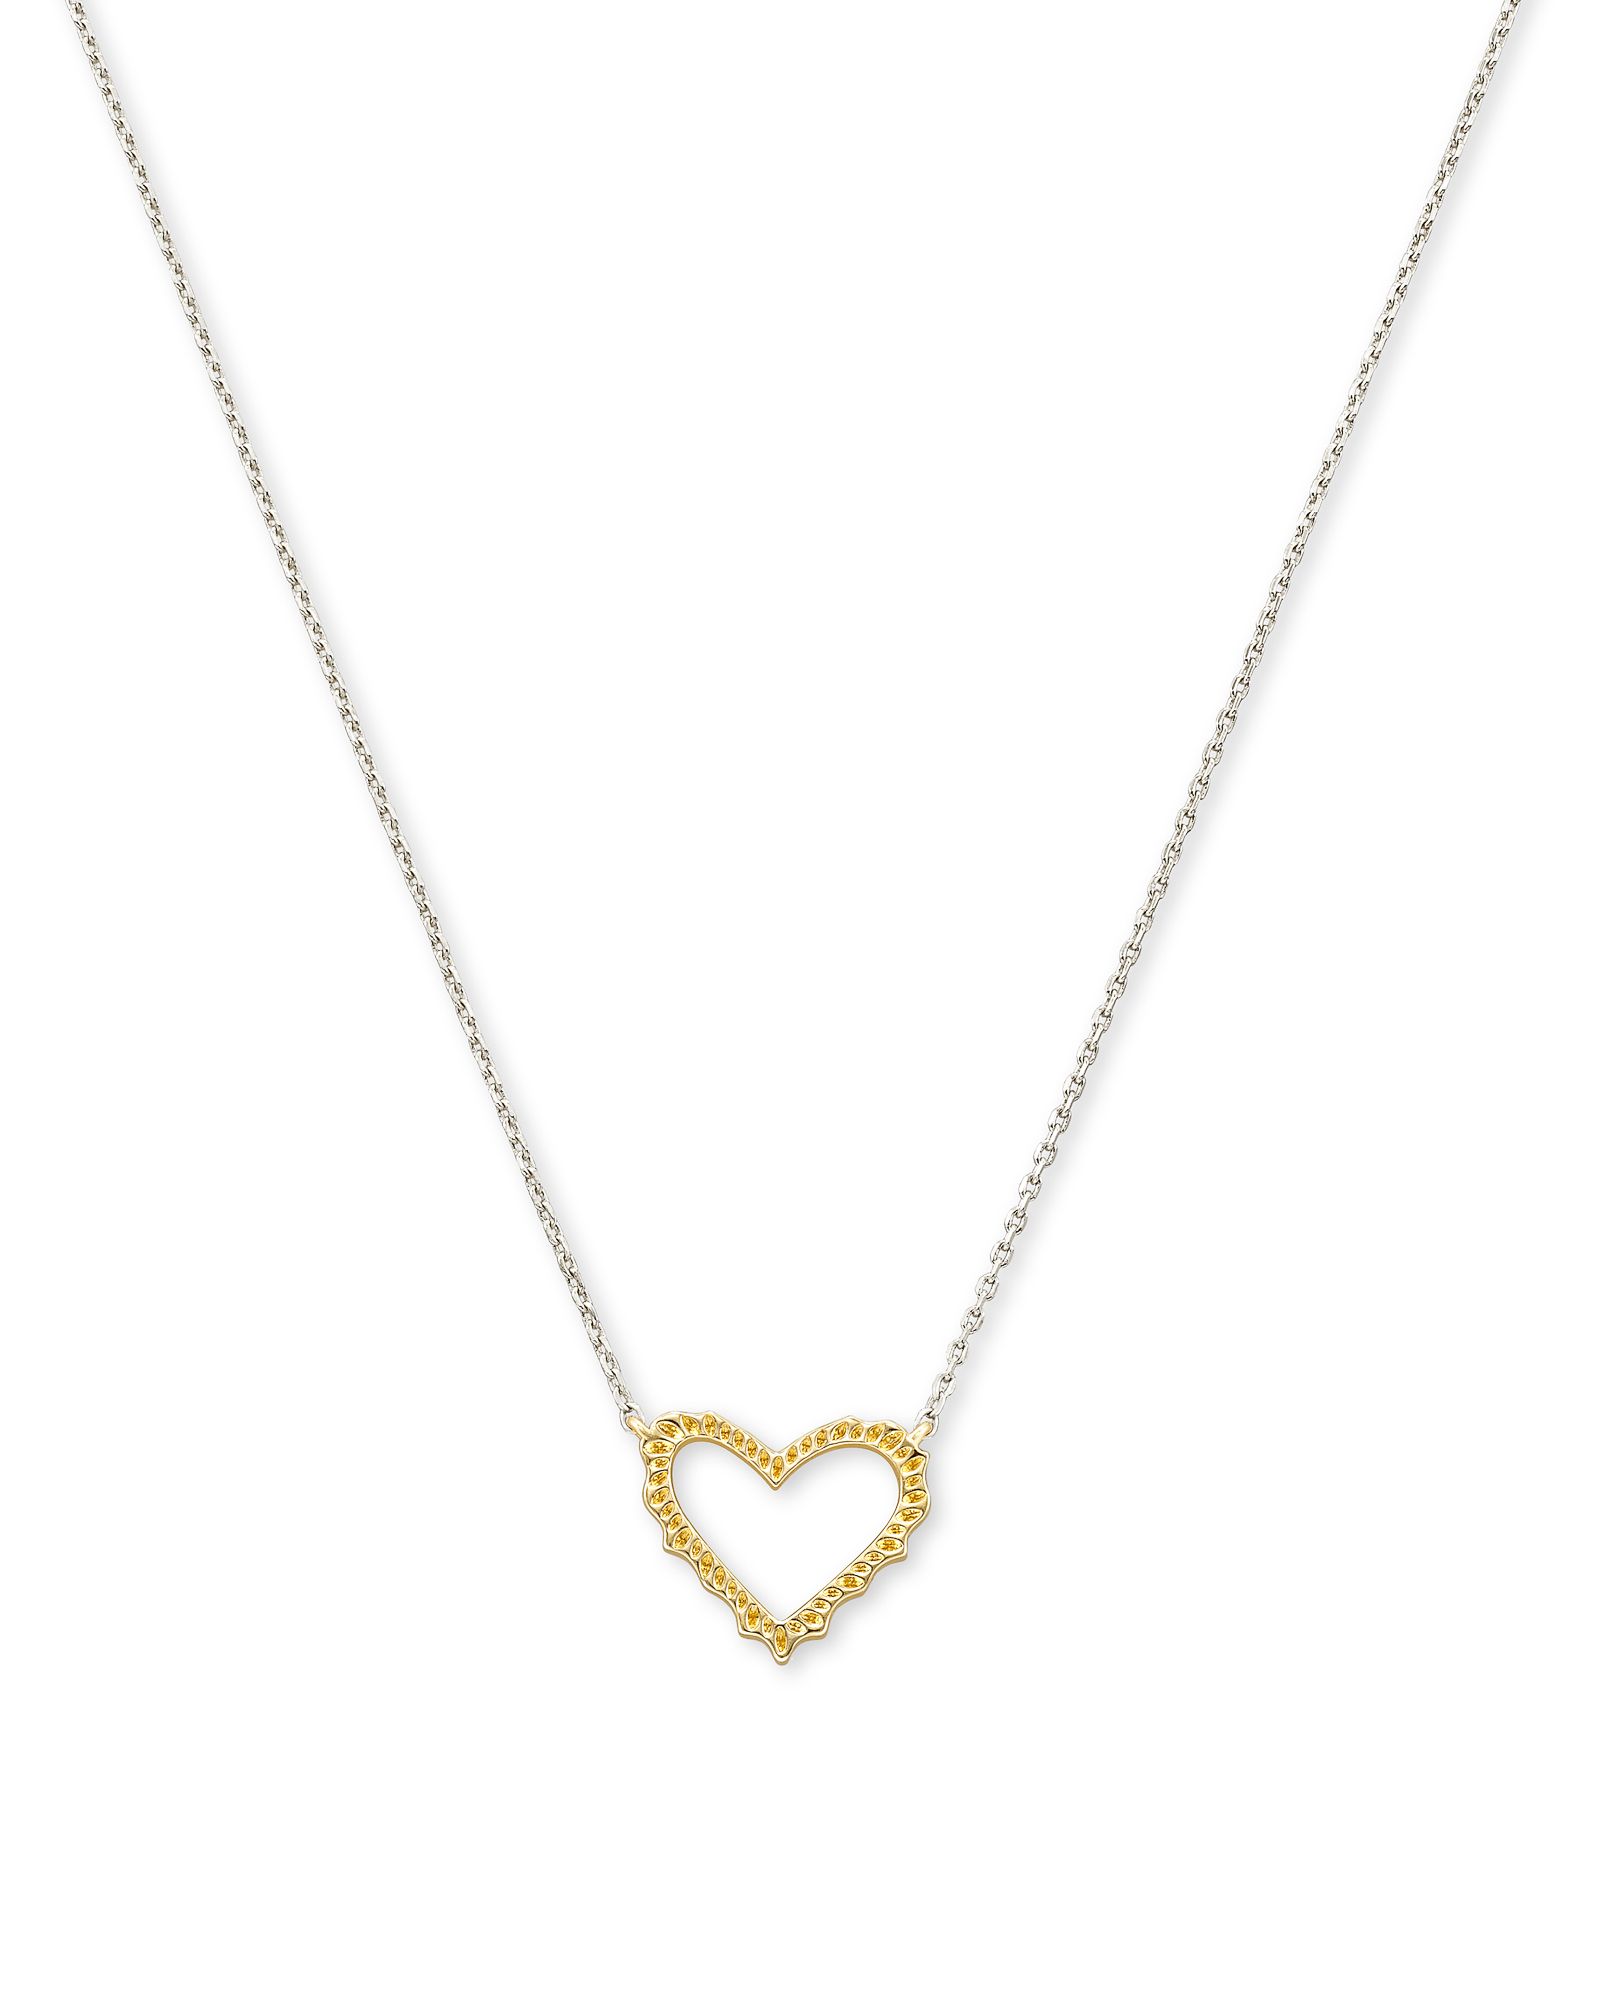 Sophee Heart Small Pendant Necklace in Silver | Kendra Scott